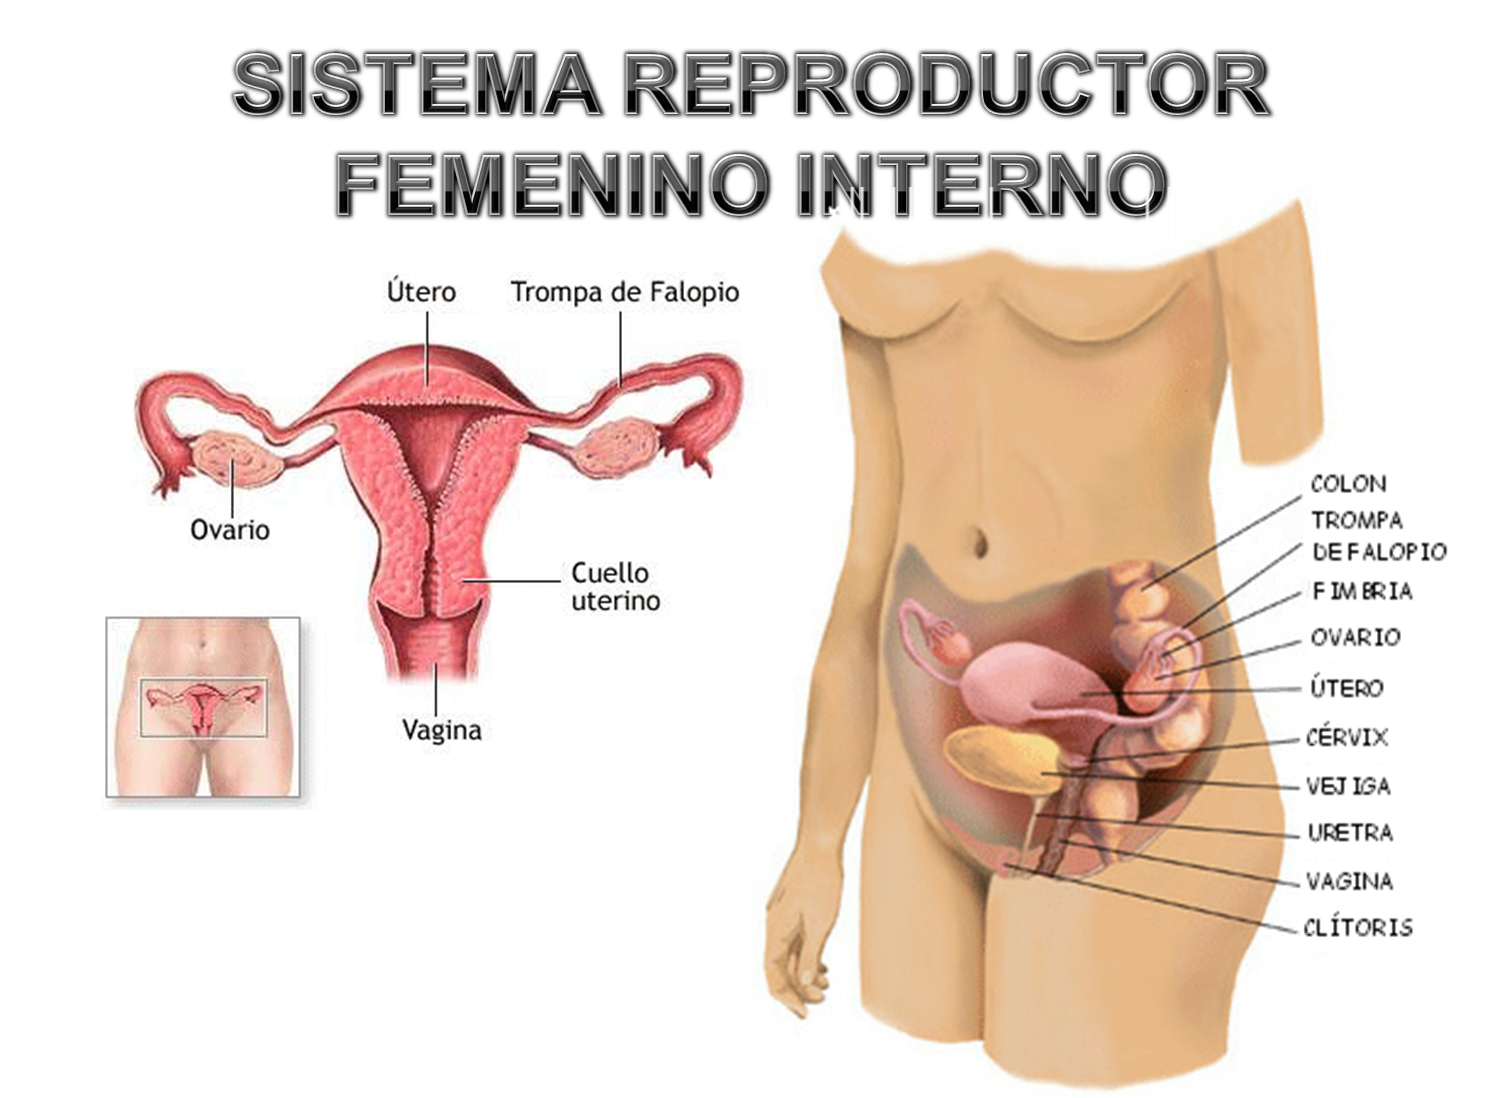 Imagenes aparato reproductor femenino (con nombres) - Imagenes Del Aparato Reproductor Masculino Y Femenino